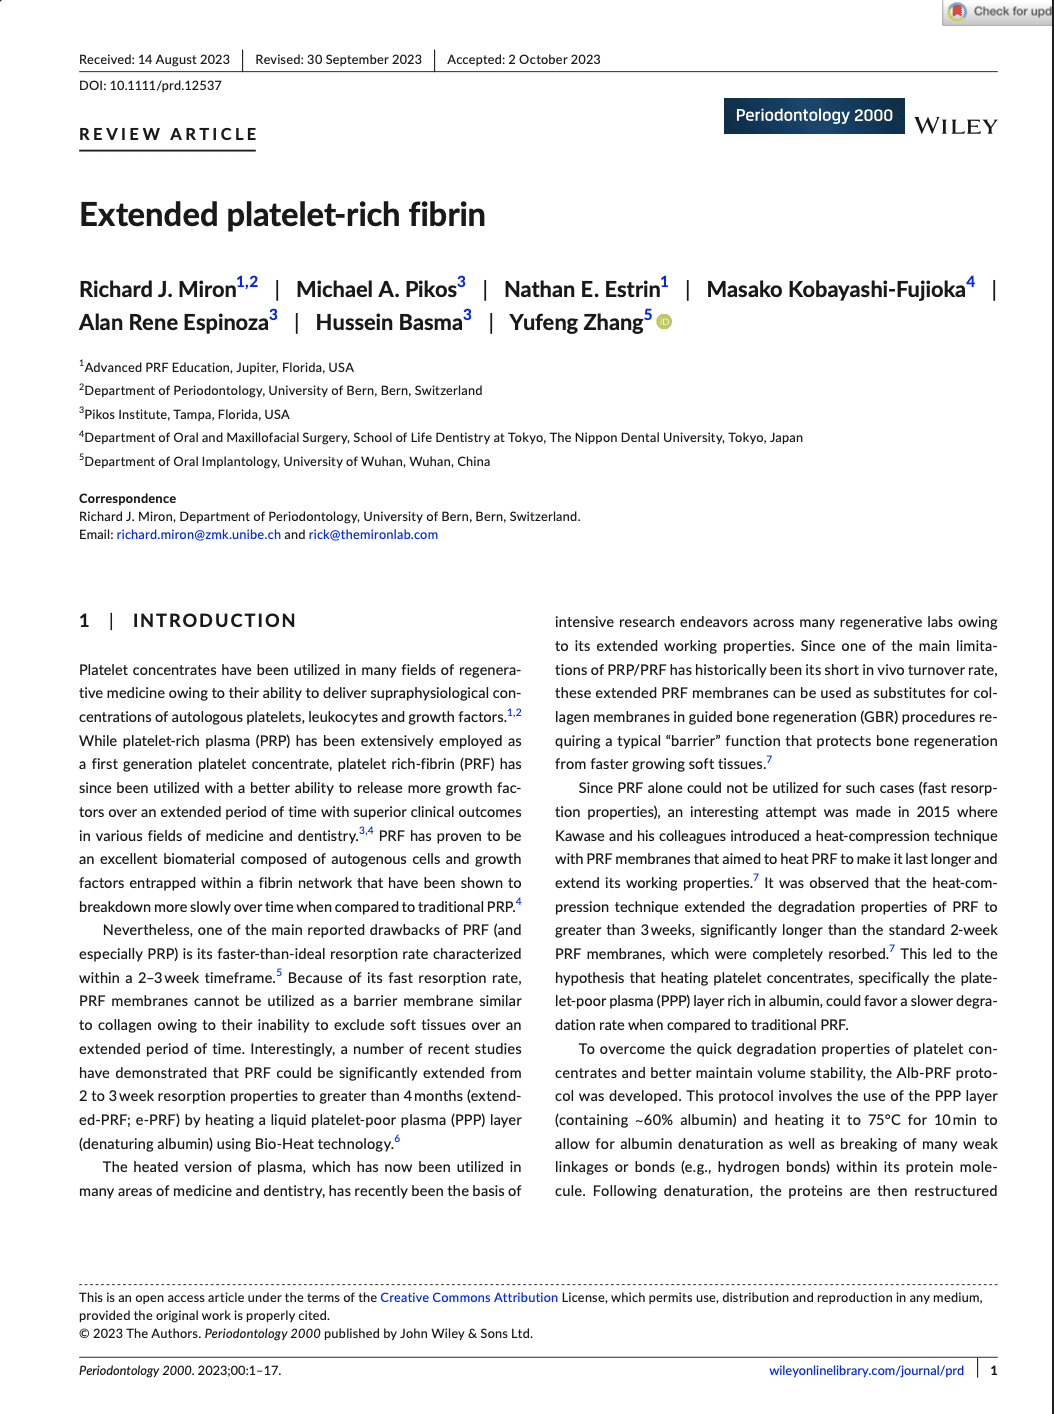 Extended Platelet Rich Fibrin by Miron et al. (2023)